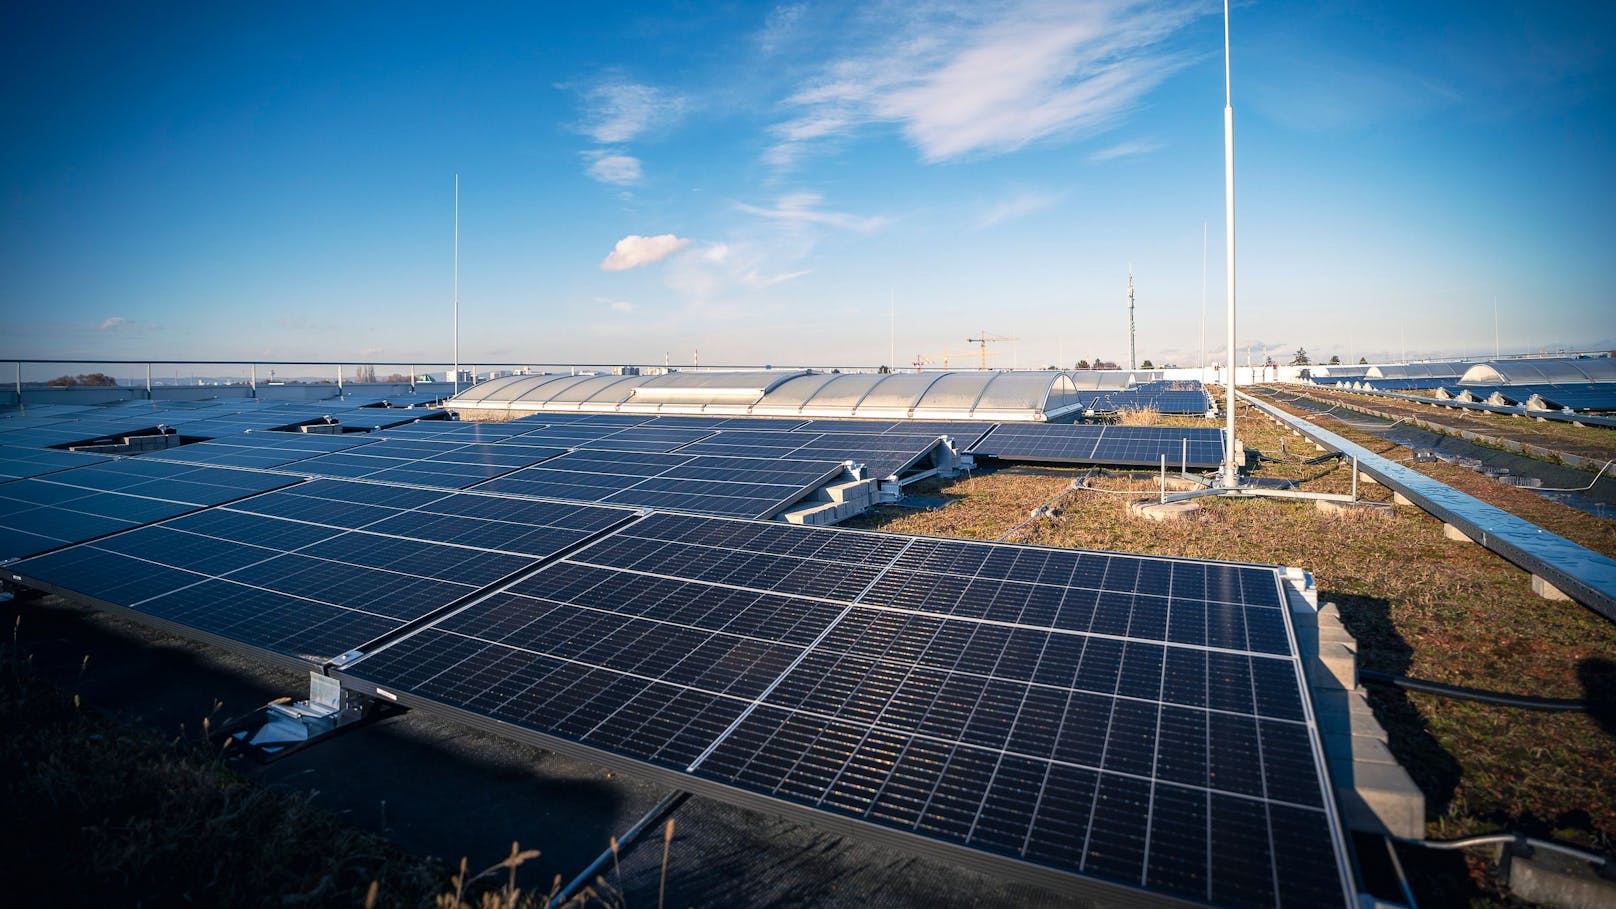 Auf dem Dach: 1.369 Photovoltaikmodule auf einer Fläche von 8.000 Quadratmetern